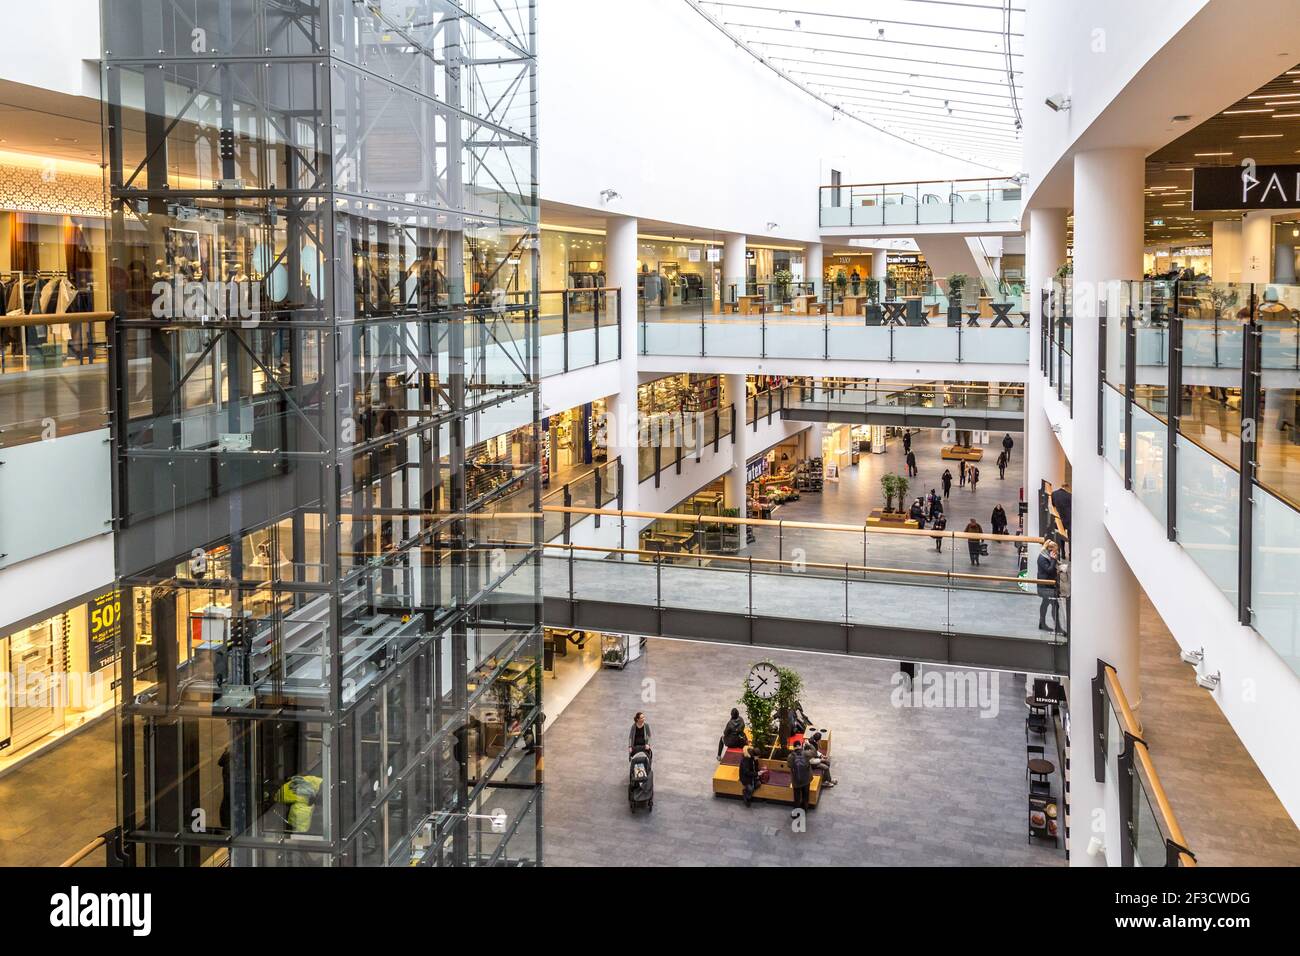 Bevidstløs Tal til akse Frederiksberg Centret Shopping Mall in Copenhagen, Denmark Stock Photo -  Alamy